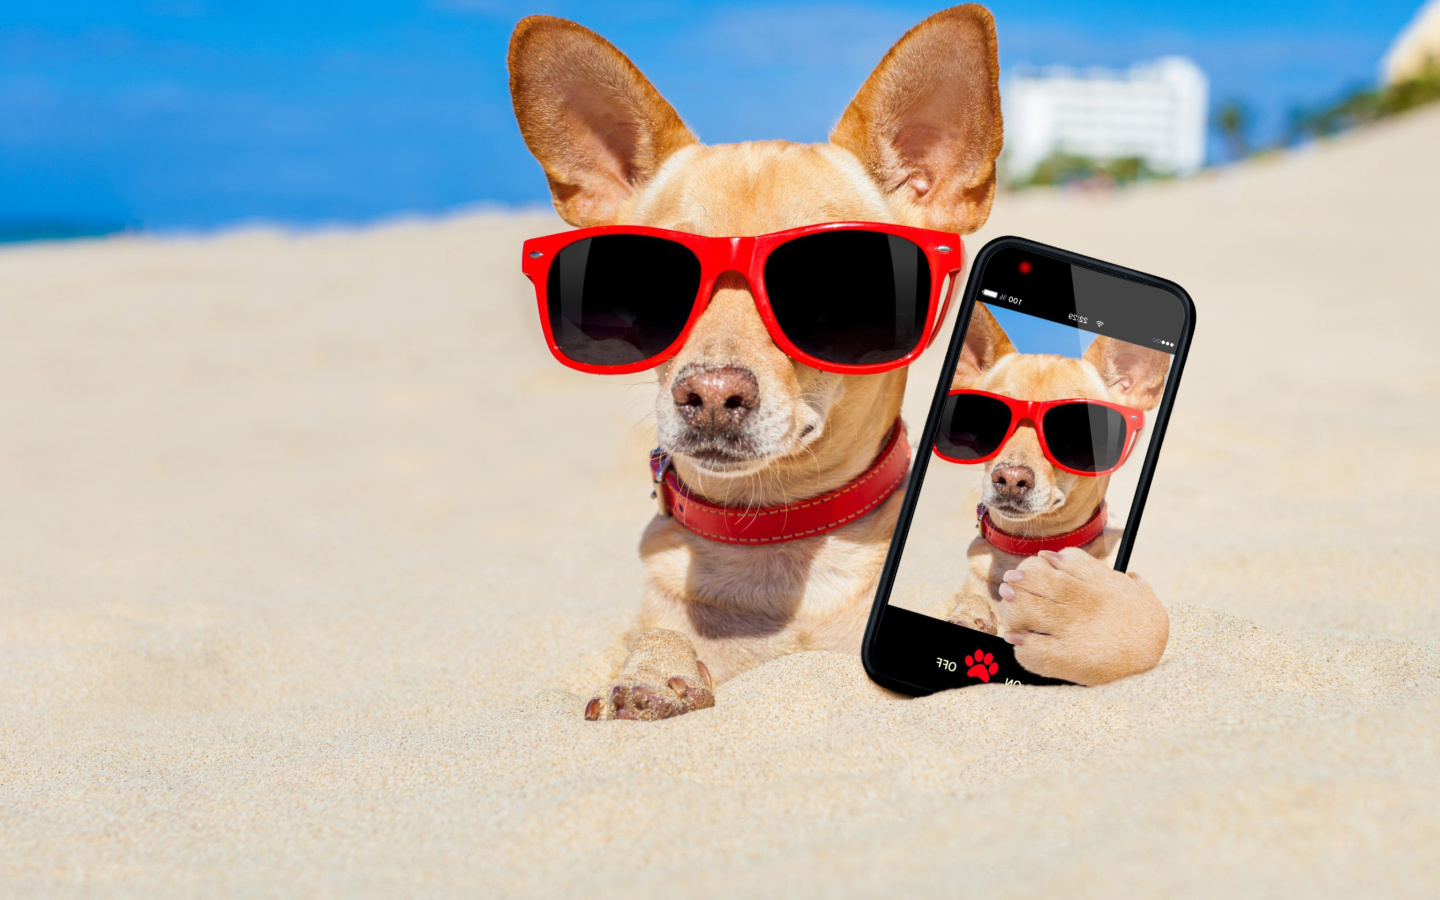 Обои Chihuahua with mobile phone 1440x900